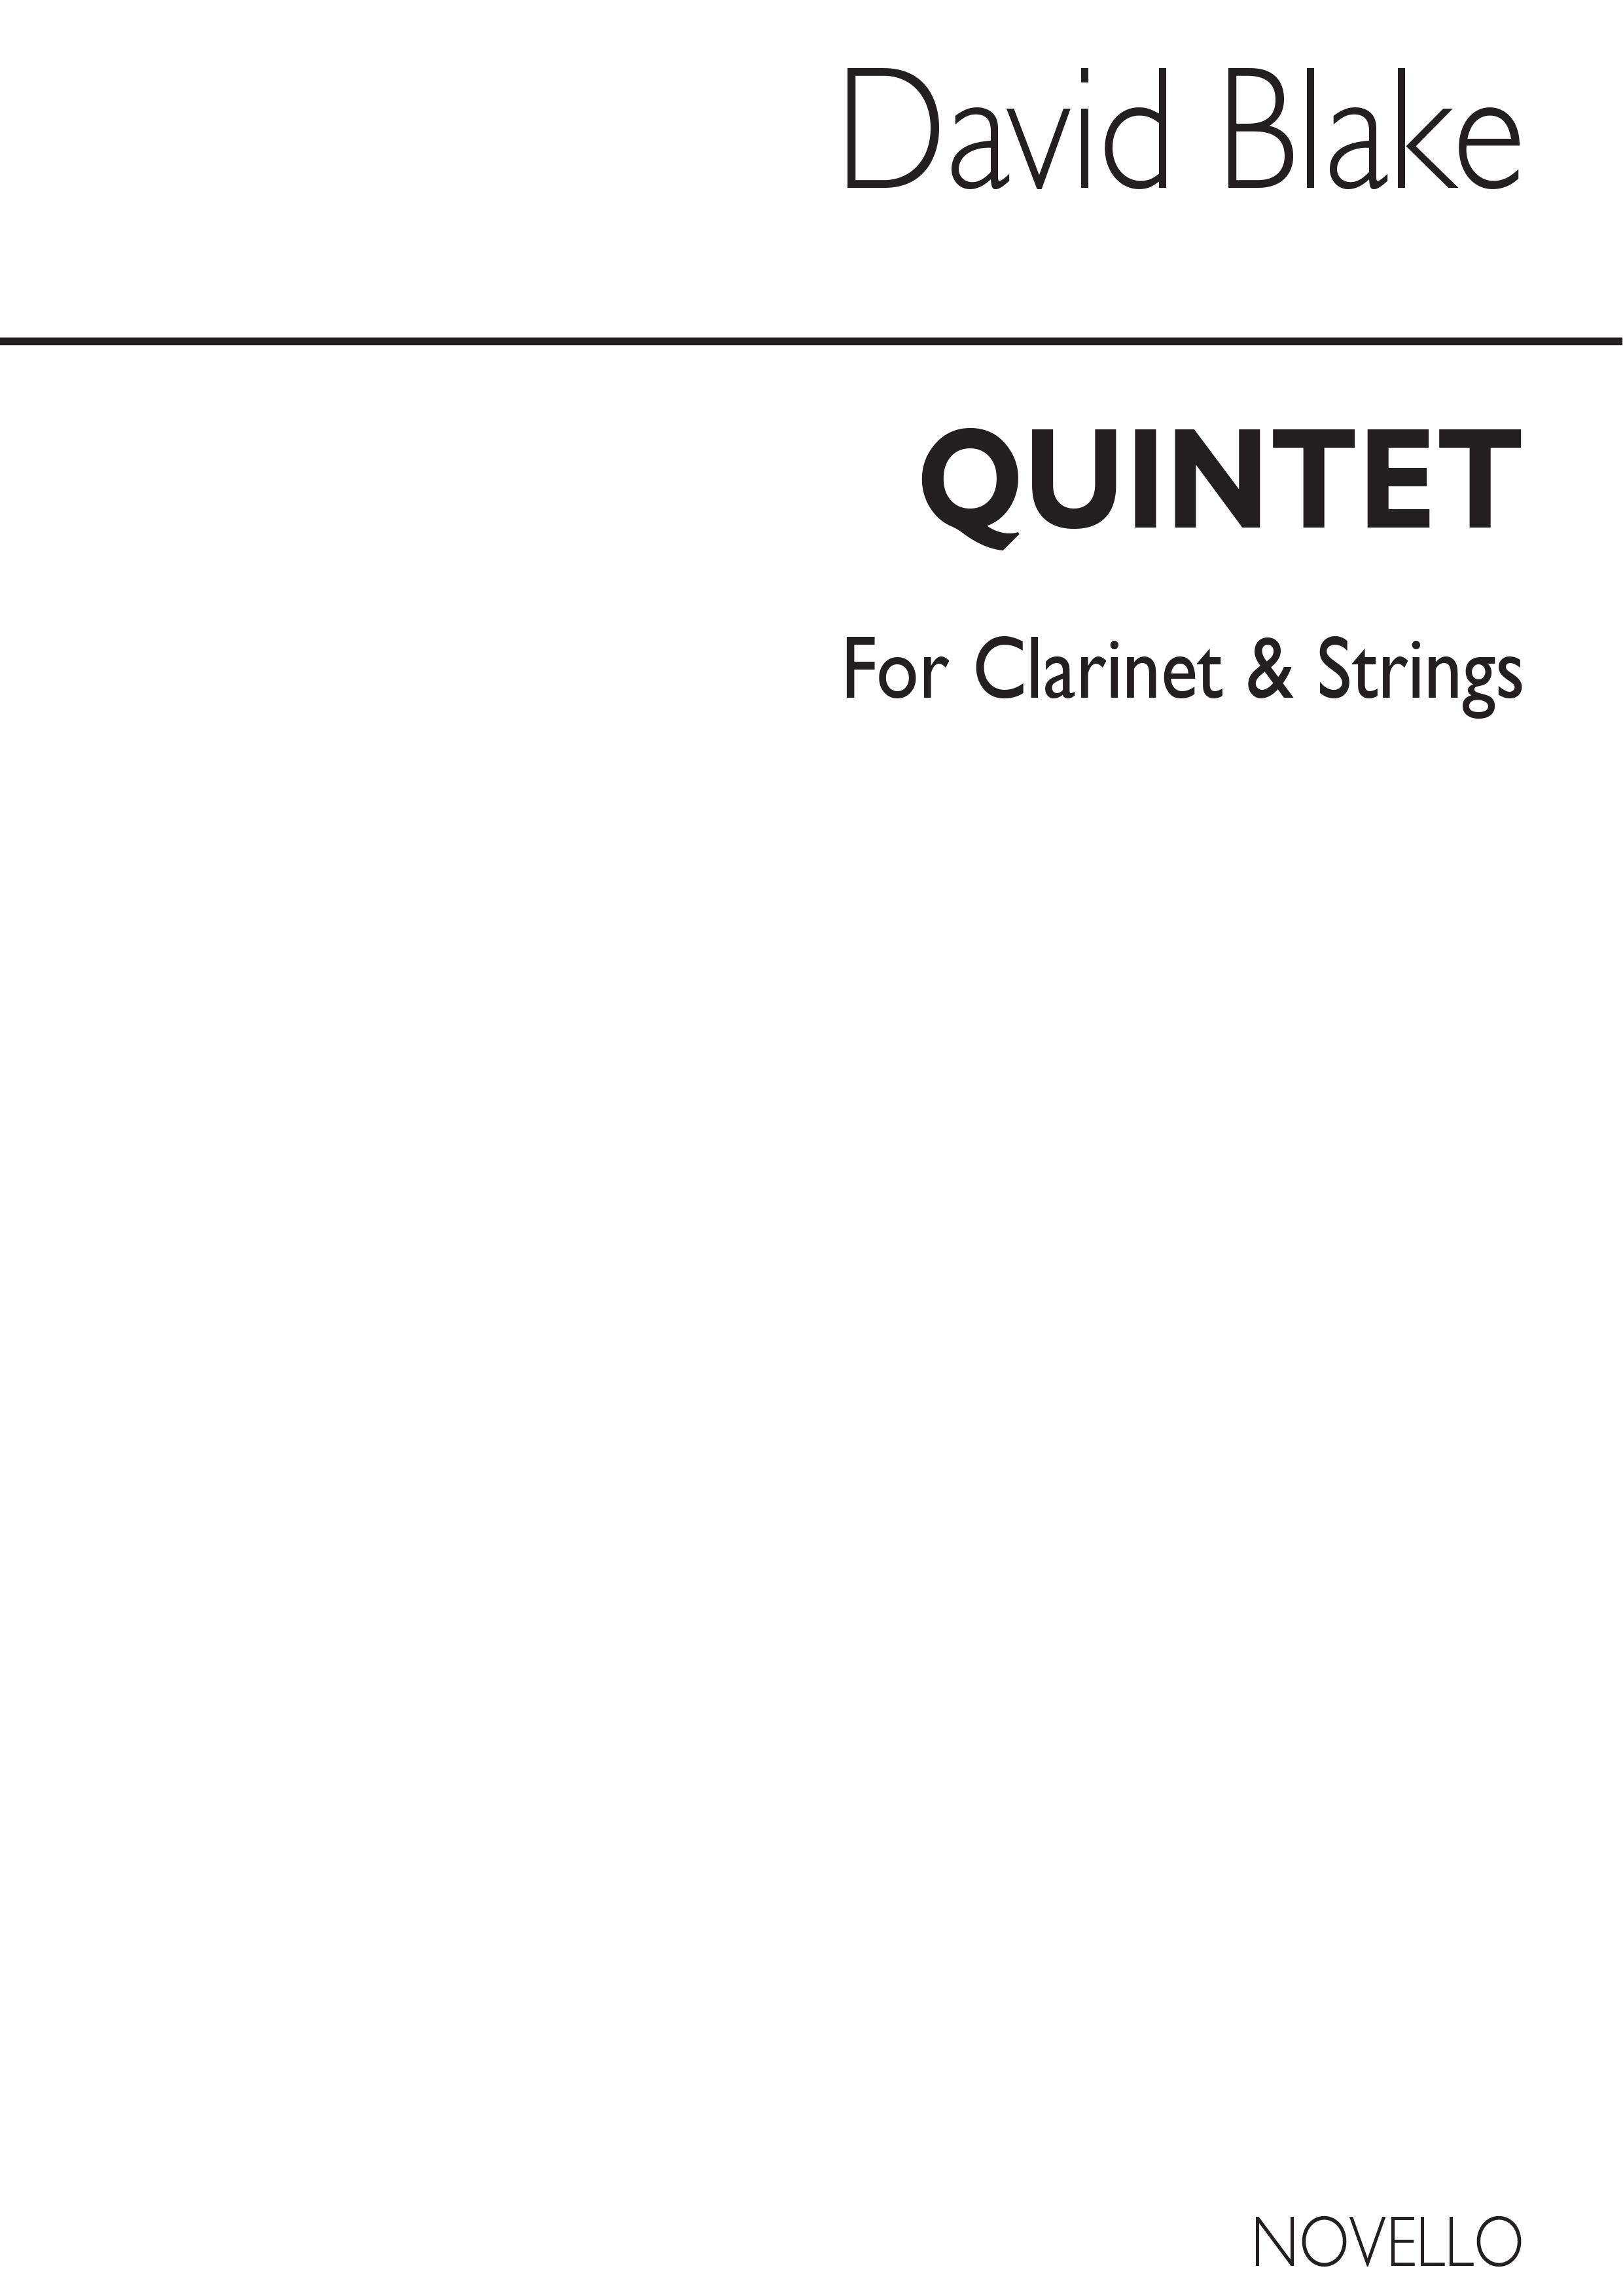 David Blake: Quintet For Clarinet & Strings (Score)